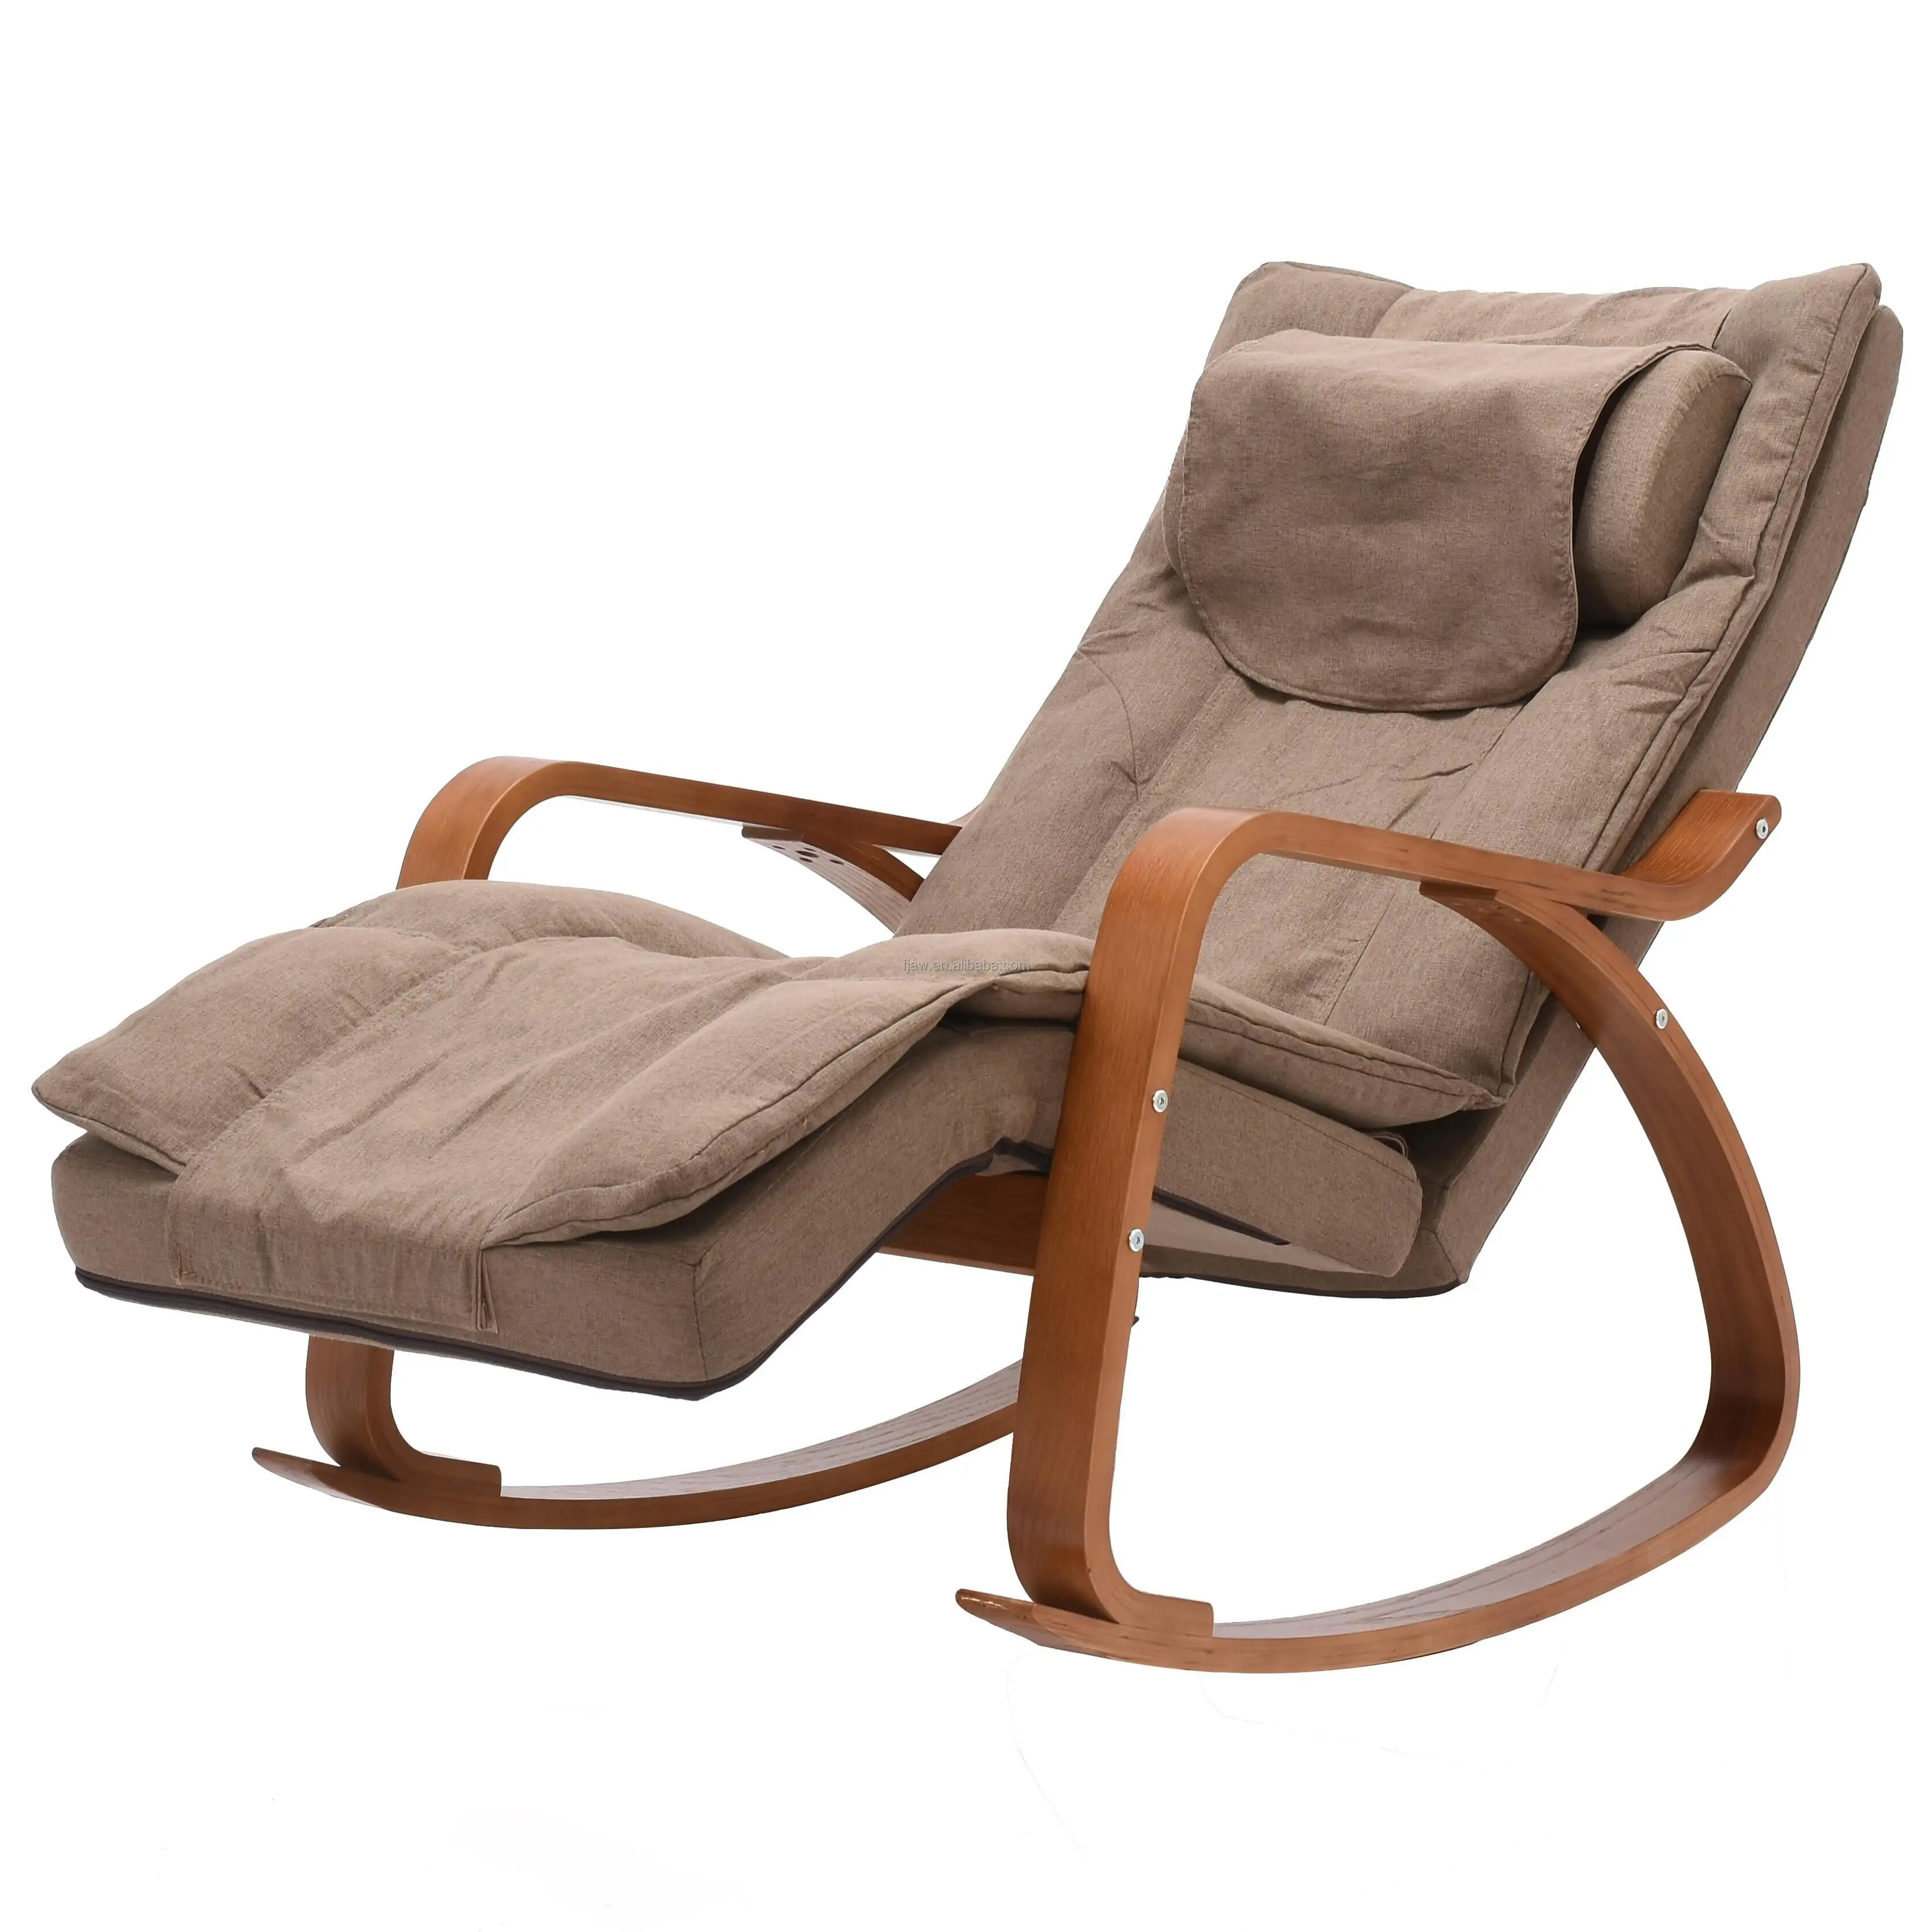 Распродажа офисные и домашние расслабляющие вибрирующие складные полноразмерные массажные кресла-качалки Shiatsu с нулевой гравитацией по хорошей цене